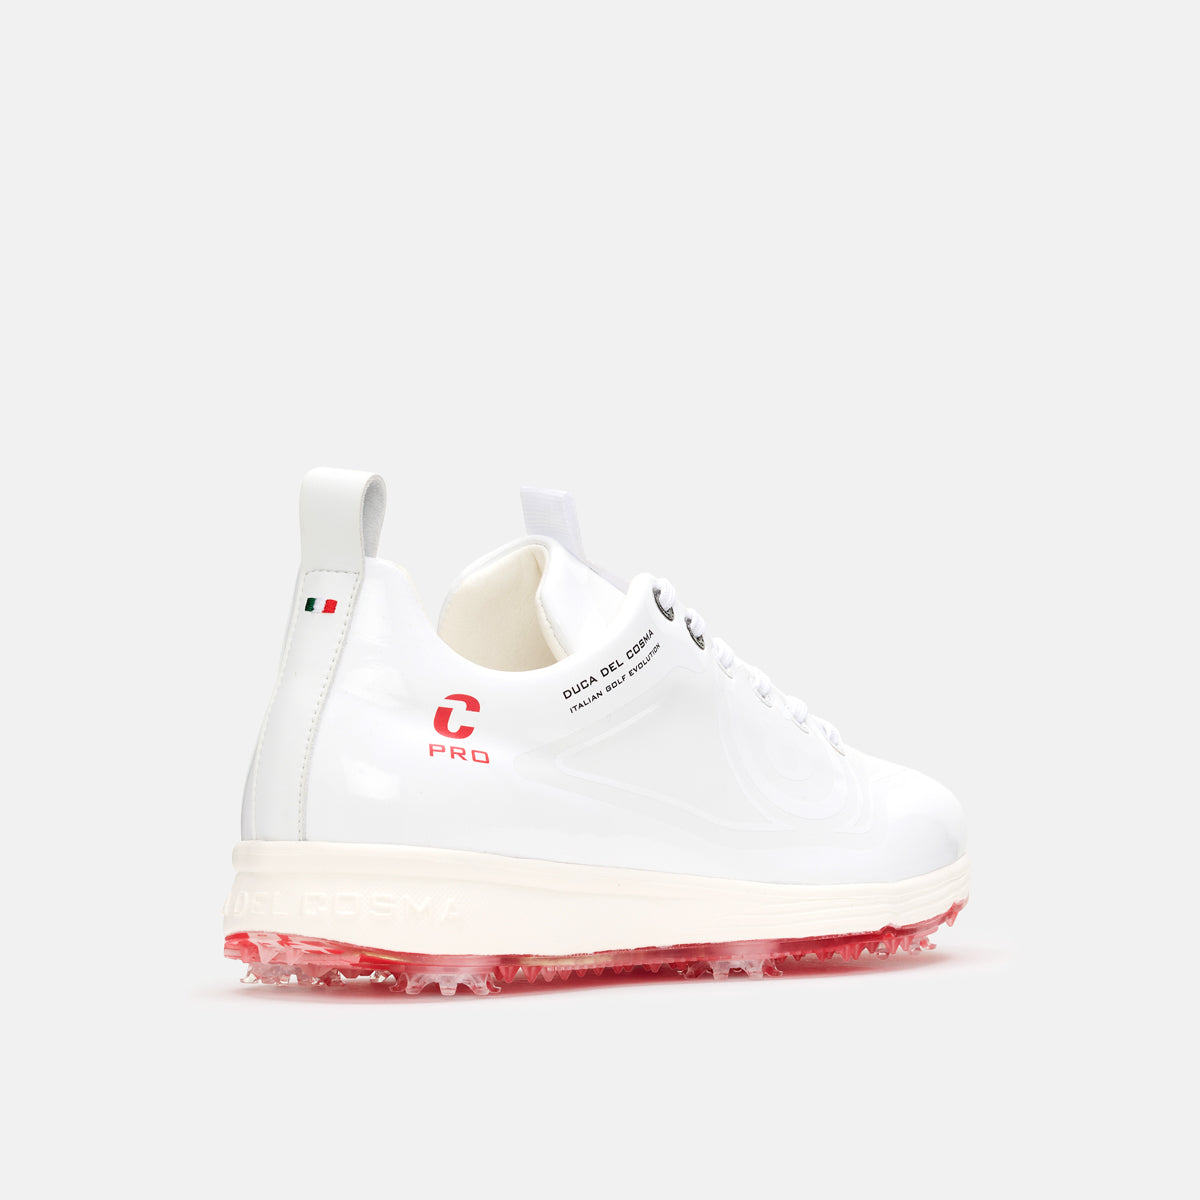 Avanti Pro Spike waterproof golf shoe women Duca del Cosma